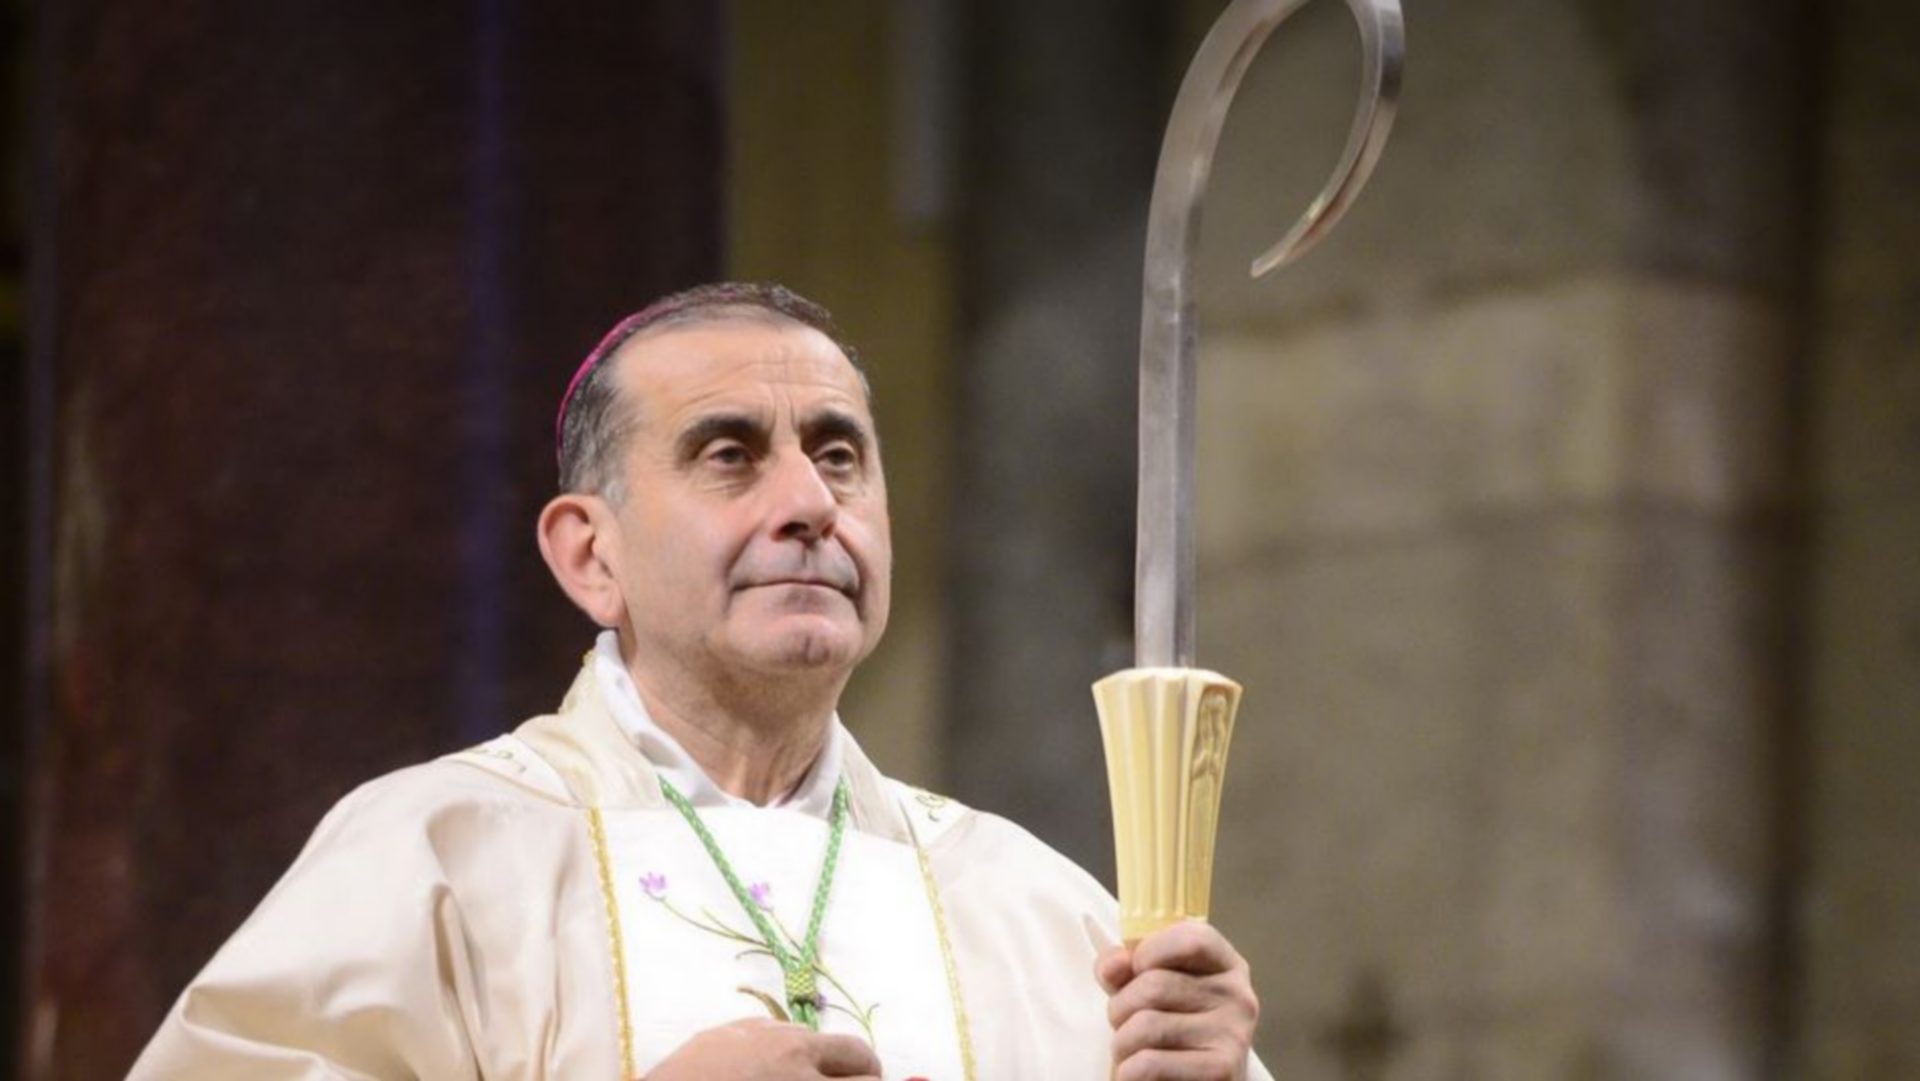 Mgr Mario Delpini est le nouvel archevêque de Milan (photo DR)